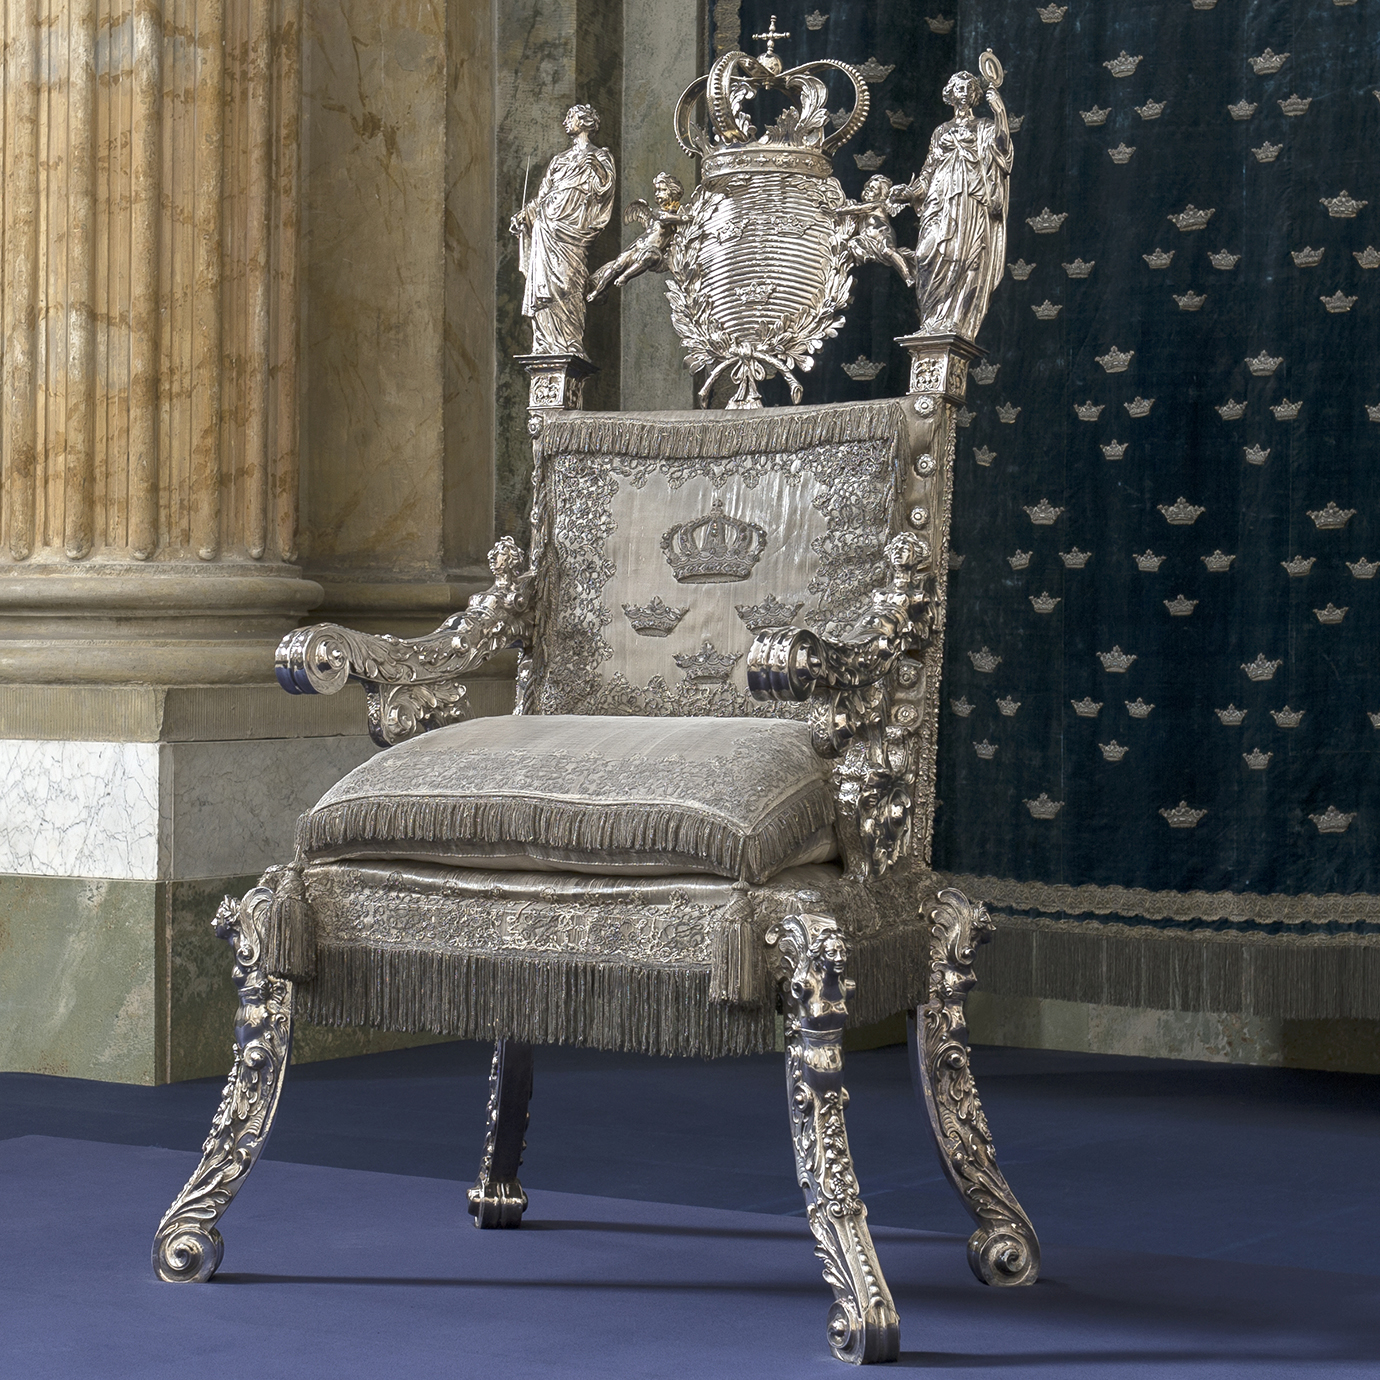 Senast silvertronen användes var 1974 då den sista riksdagens högtidliga öppnande skedde i Rikssalen på Kungl. Slottet. 